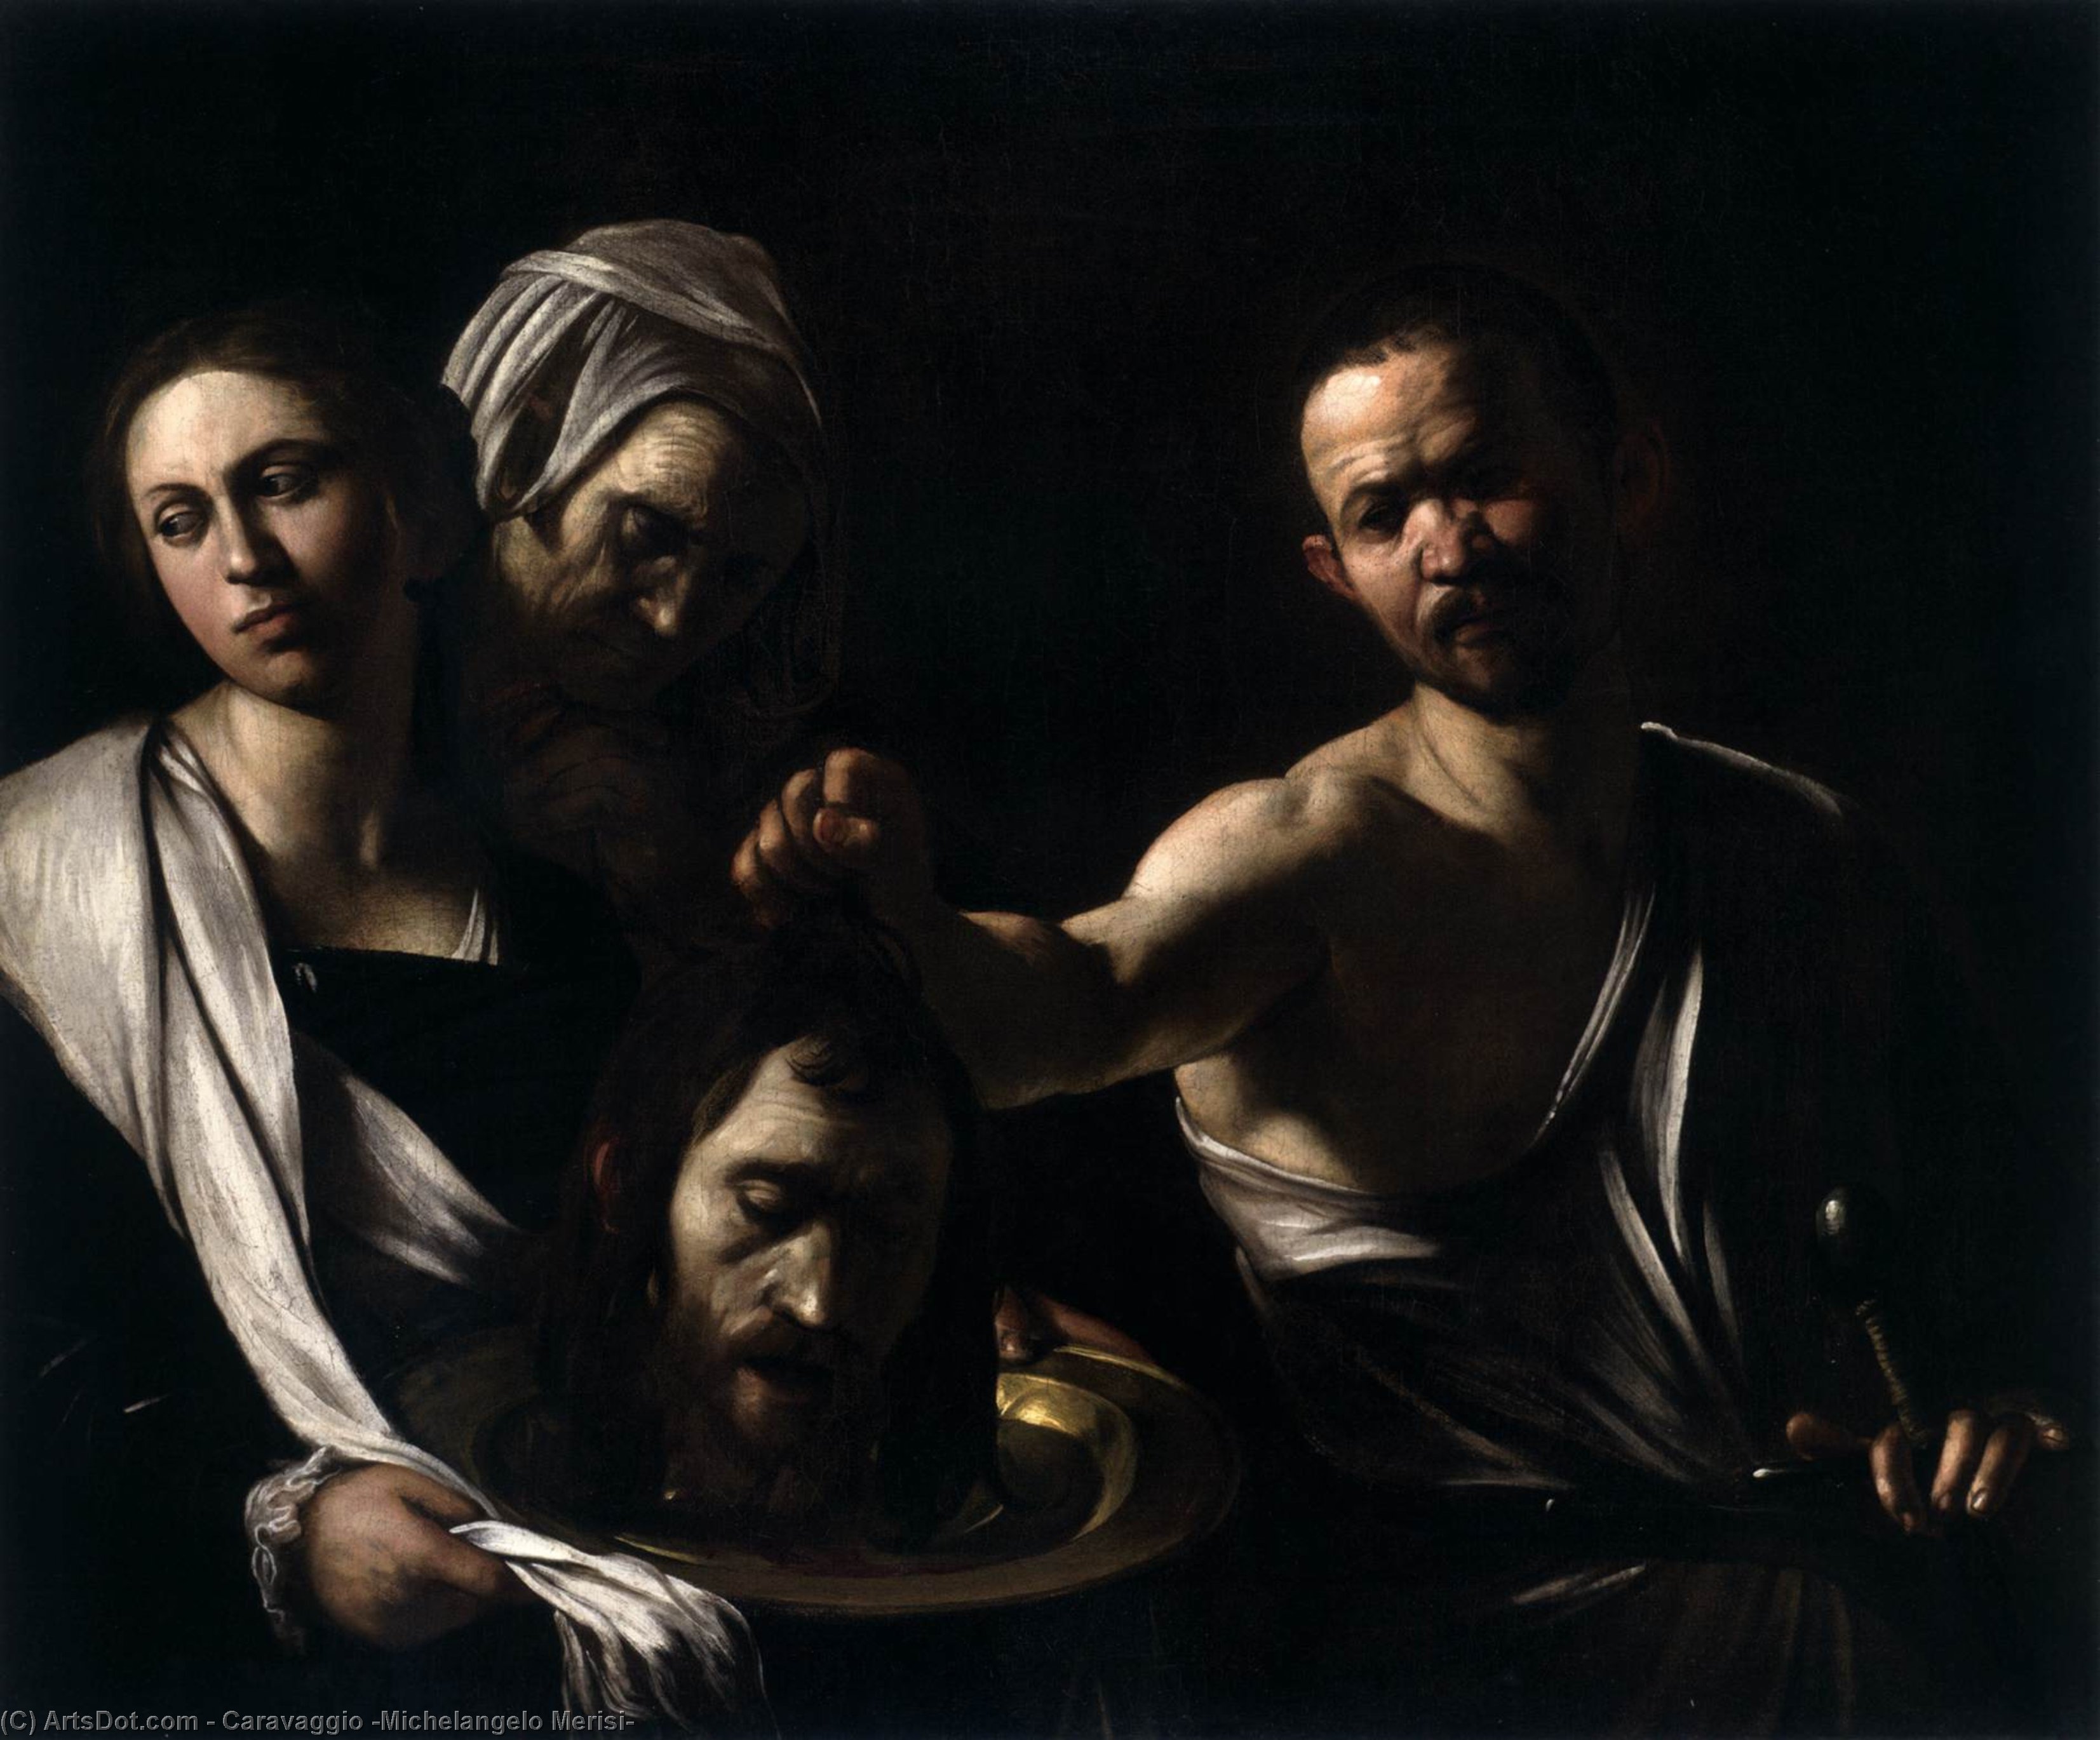 Acheter Reproductions D'art De Musée Salomé avec la tête de Saint Jean-Baptiste, 1607 de Caravaggio (Michelangelo Merisi) (1571-1610, Spain) | ArtsDot.com